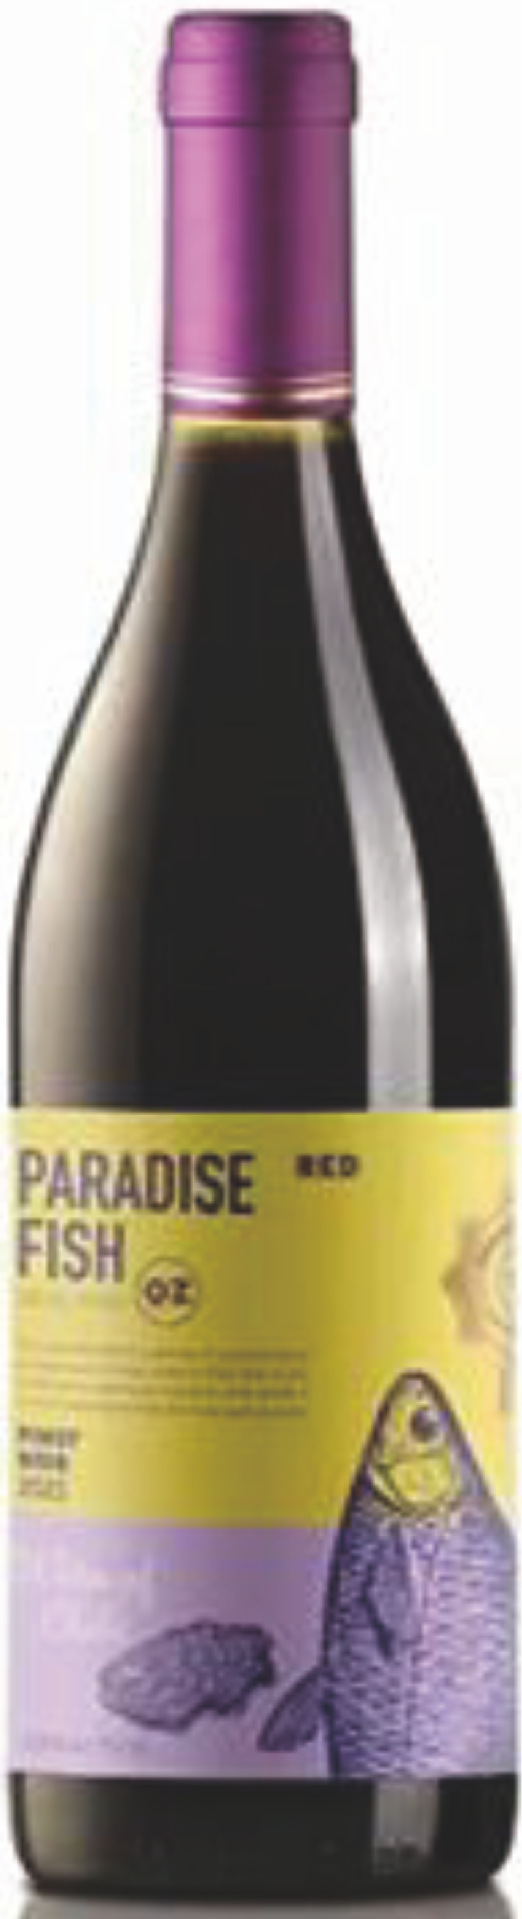 智利天堂鱼甄选黑品诺干红葡萄酒 Paradise Fish Pinot Noir